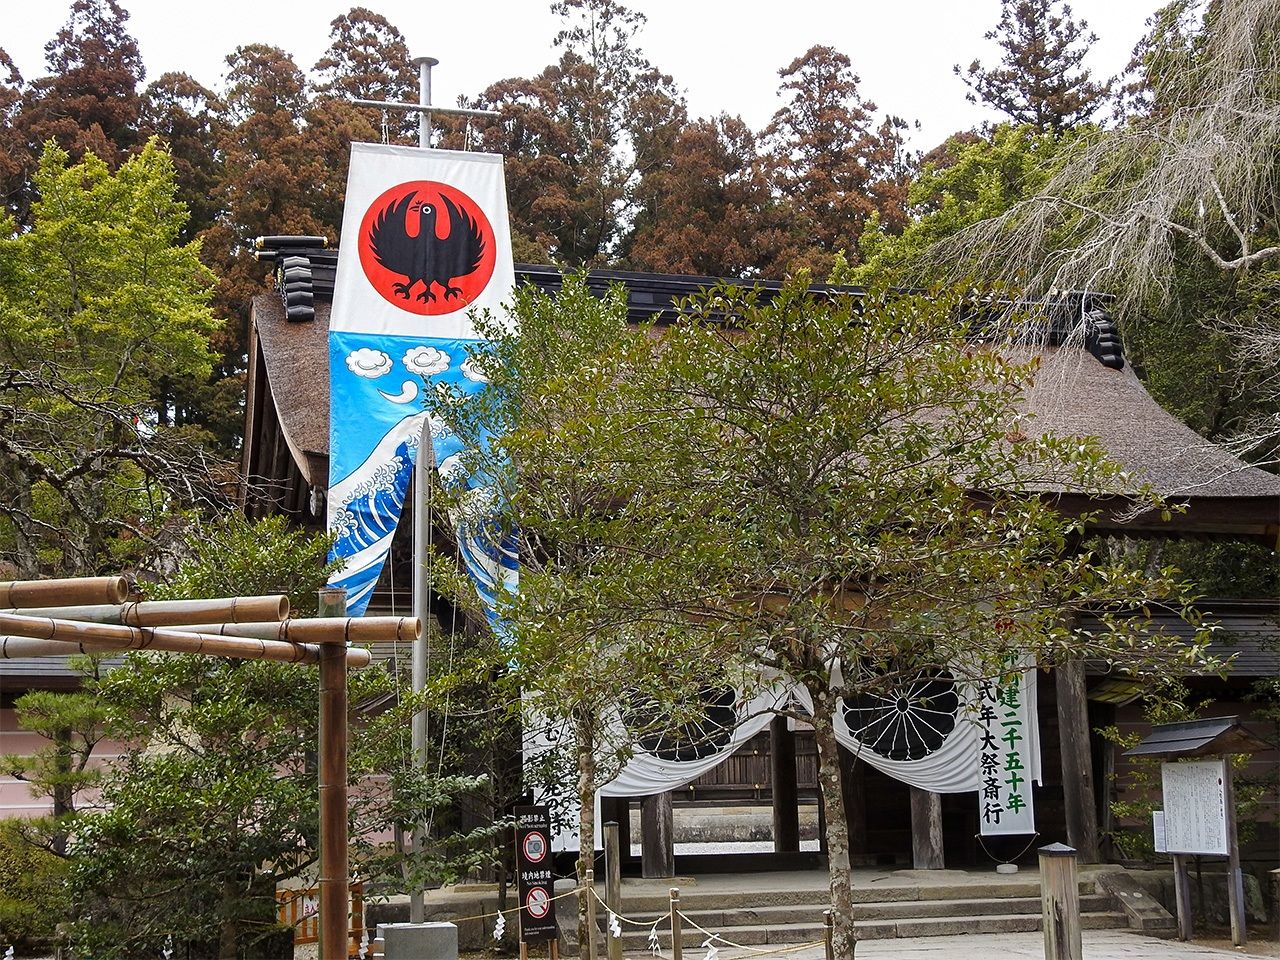 熊野三山之一的熊野那智大社内的八咫乌旗帜